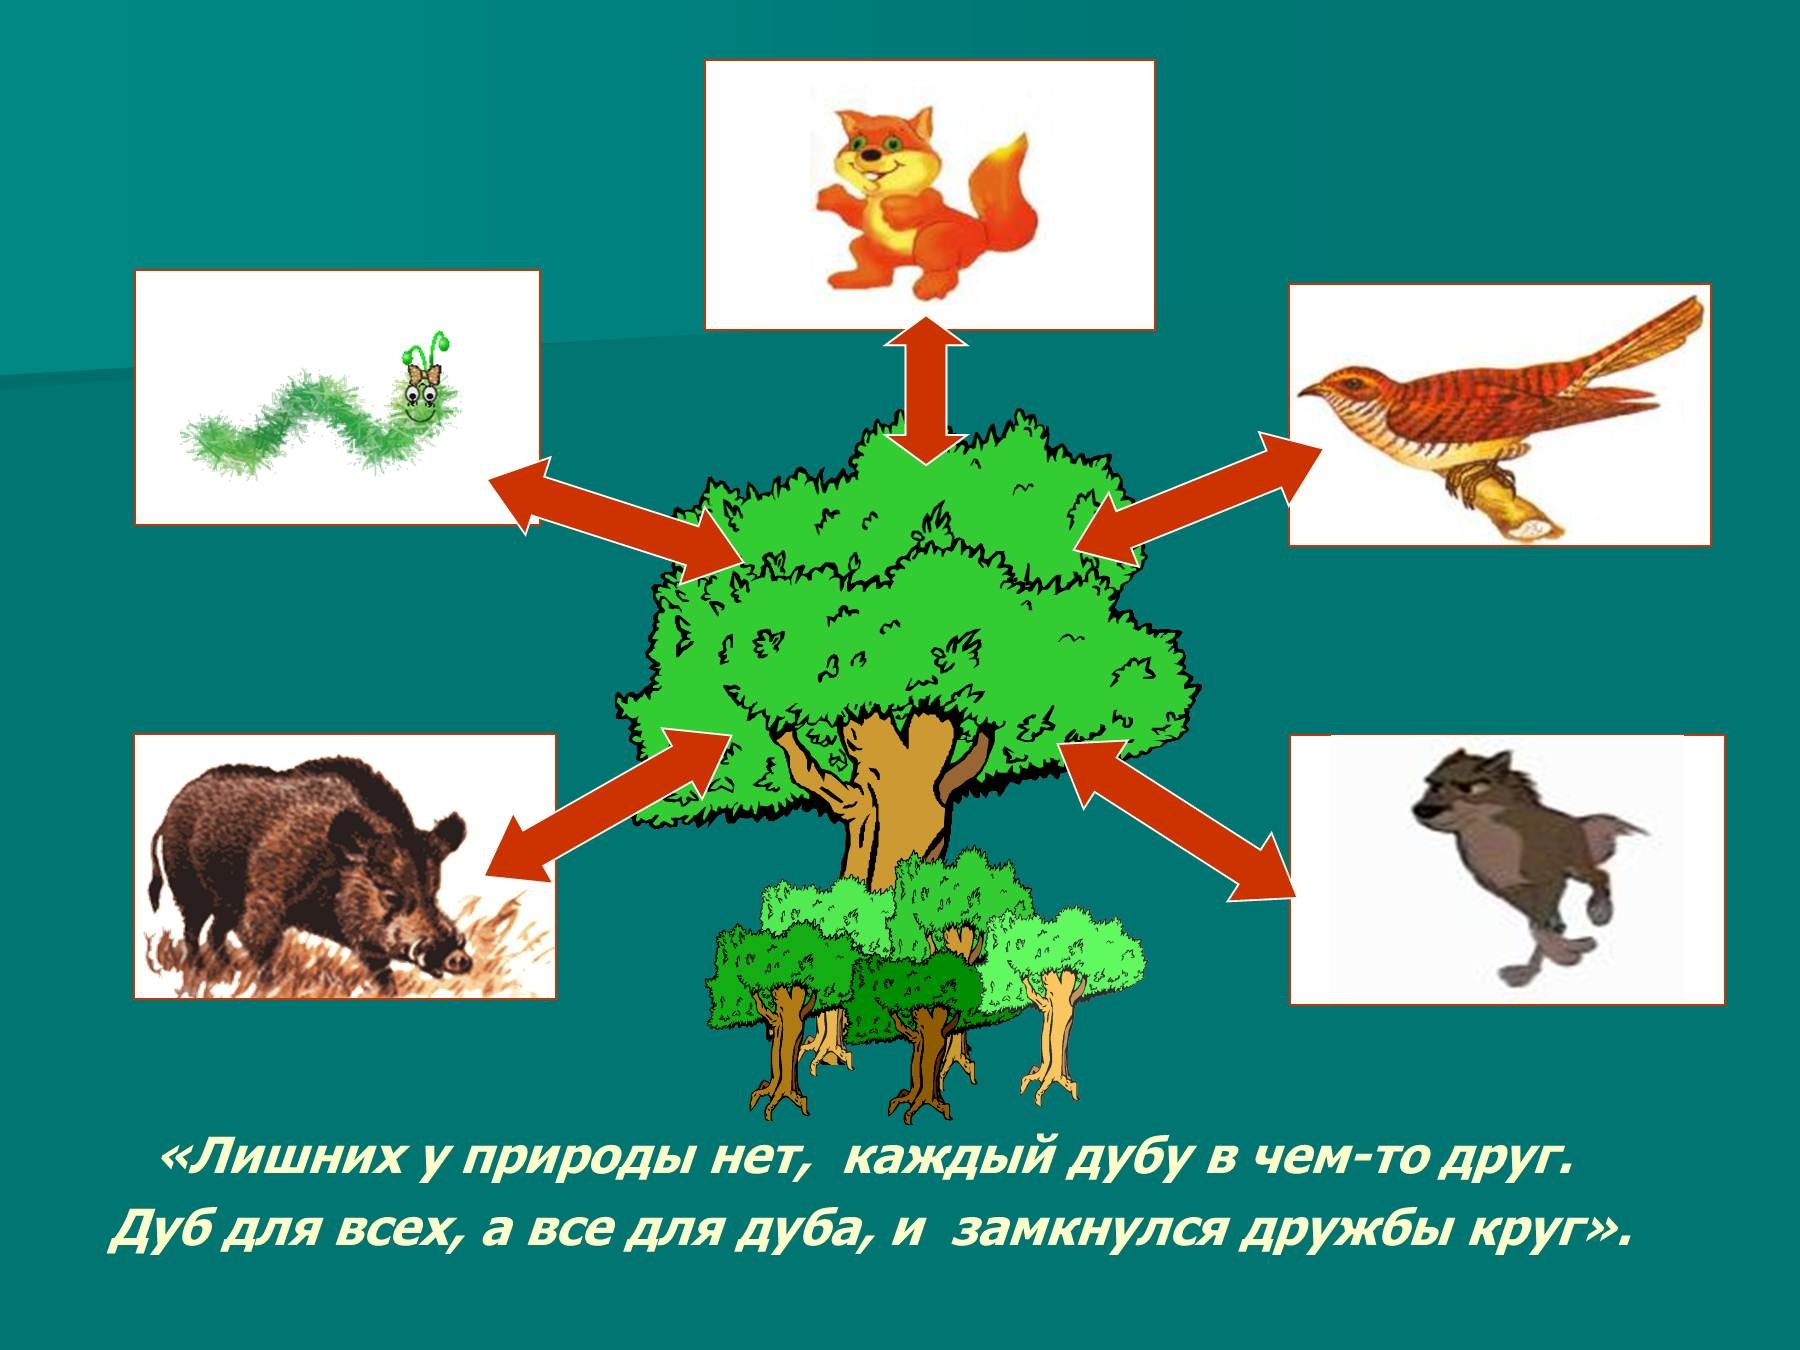 Цепь питания желуди. Взаимосвязи в природе. С кем дружит дуб. Картинка связь животных и природы. Схемы питания дуба.